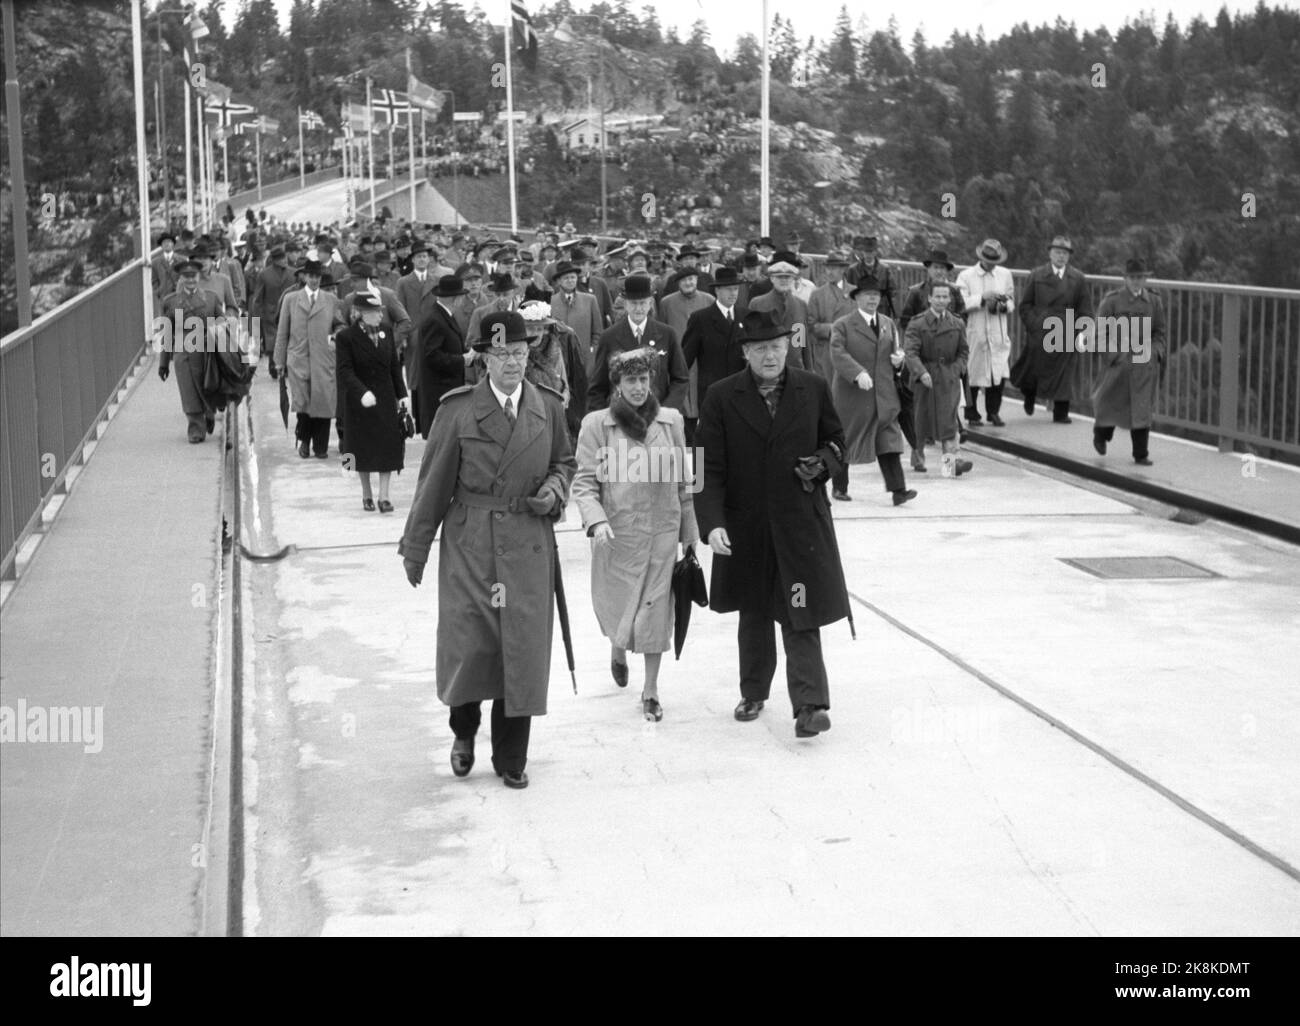 Svinesund 19460615. Le pont Svinesund à Halden, entre la Norvège et la Suède, est ouvert par le roi Haakon et le prince héritier Gustav Adolf, qui se rencontrent au milieu de la brosse de pont de 420 mètres de long. Après la cérémonie d'ouverture, les ouvreurs du pont royal ont marché jusqu'au côté suédois du pont. Nous voyons ici le prince héritier Gustaf Adolf de Suède qui est devenu roi en 1950 et la princesse Louise de la Couronne qui vient du côté suédois. A Strømstad, il y a eu un grand dîner. Photo: Thorbjørn Skotaam / Archives actuelles / NTB Banque D'Images